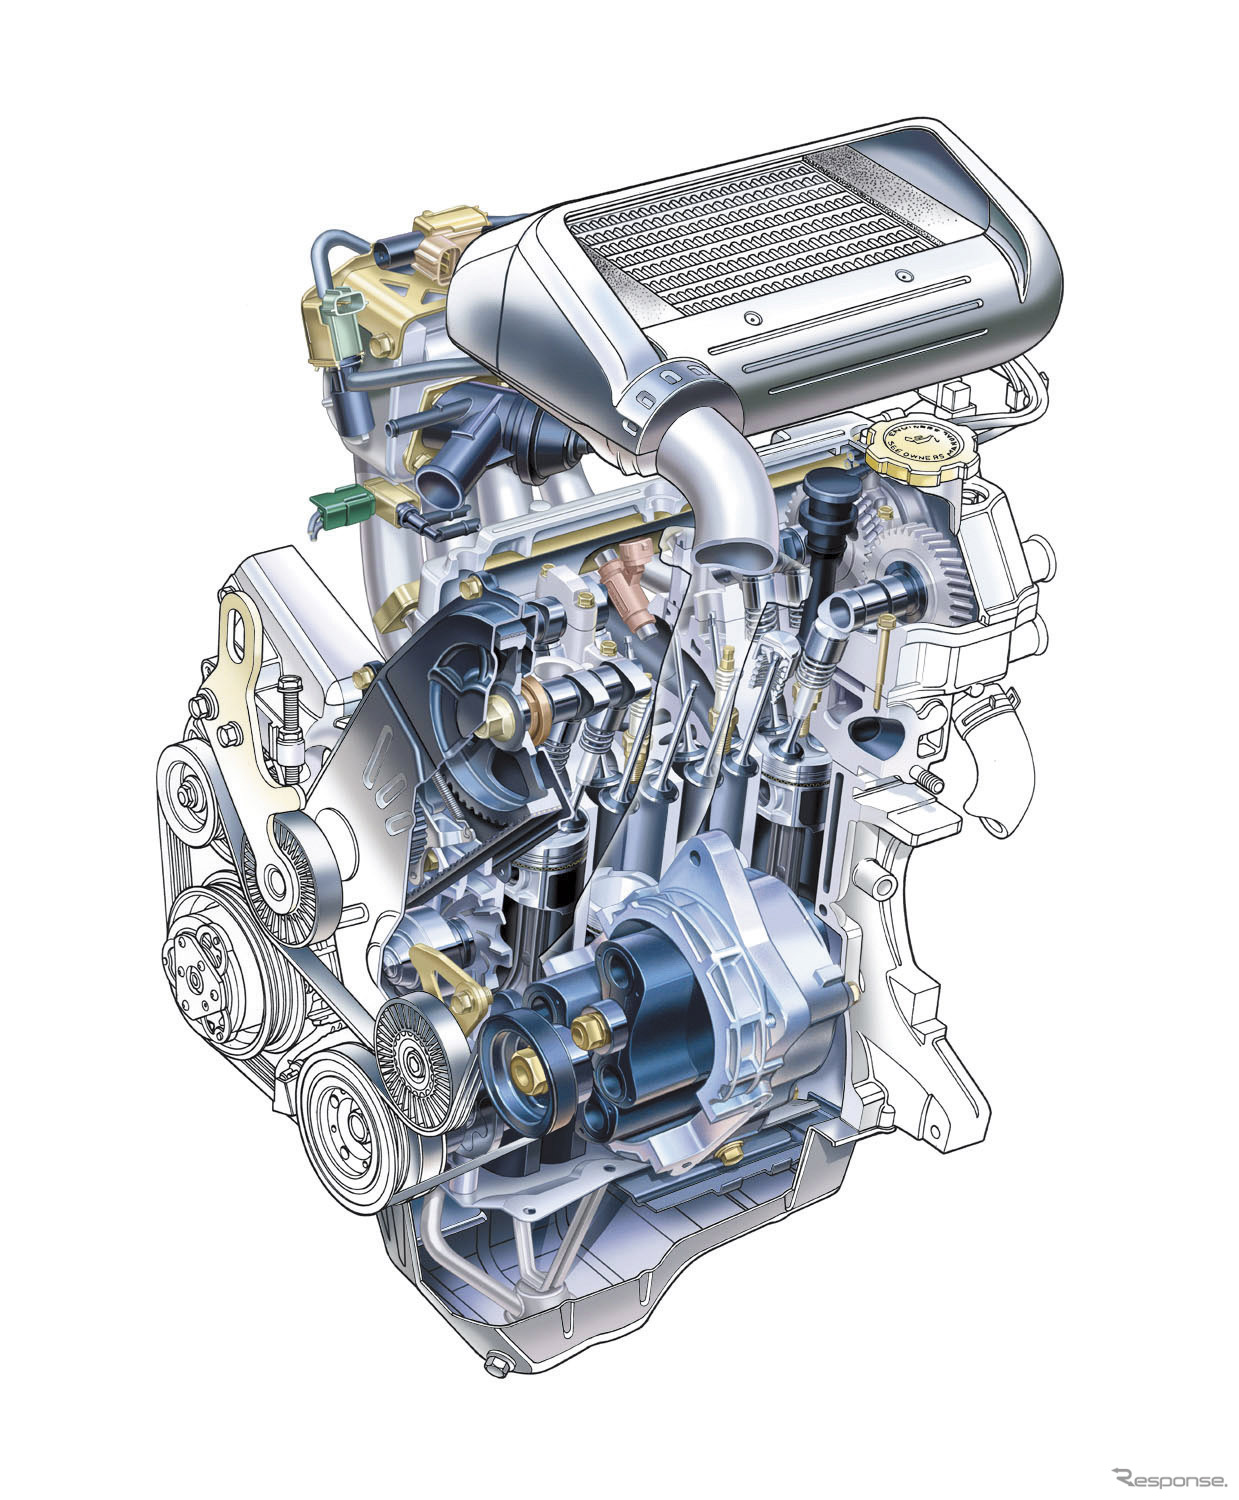 スバル R2に搭載されるDOHC16バルブスーパーチャージャーエンジン